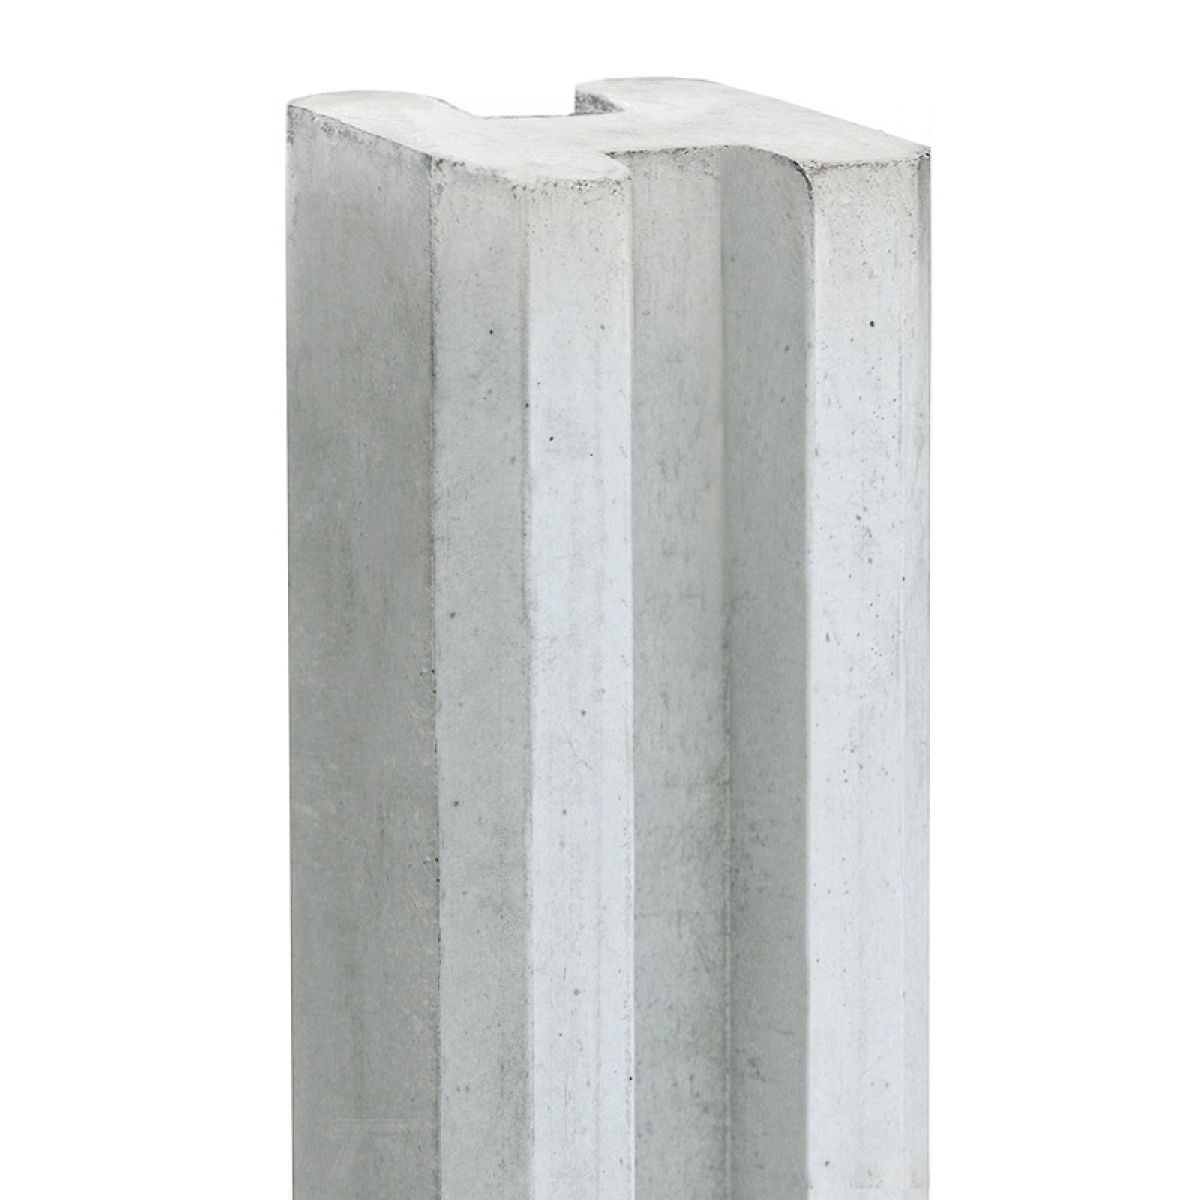 Betonnen T-paal wit/grijs 11.5x11.5x280cm | Van